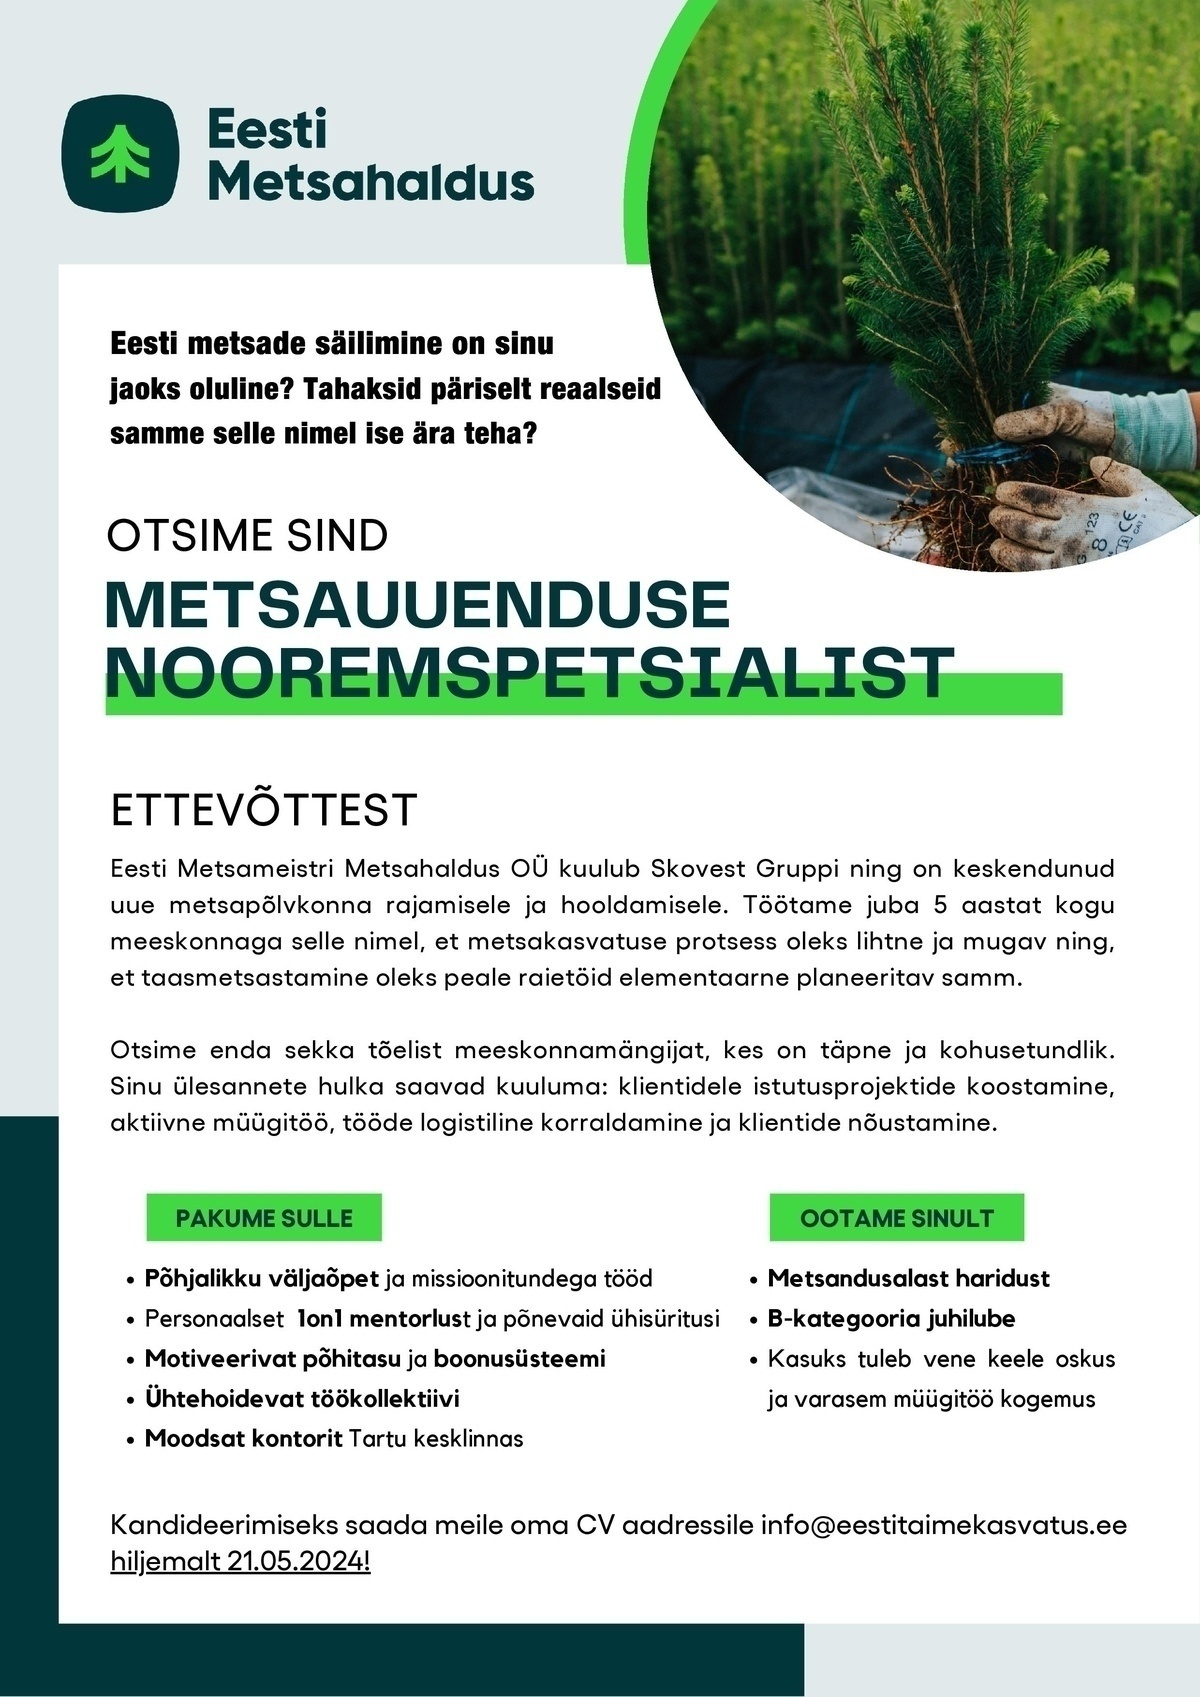 Eesti Metsameistri Metsahalduse OÜ Metsauuenduse nooremspetsialist